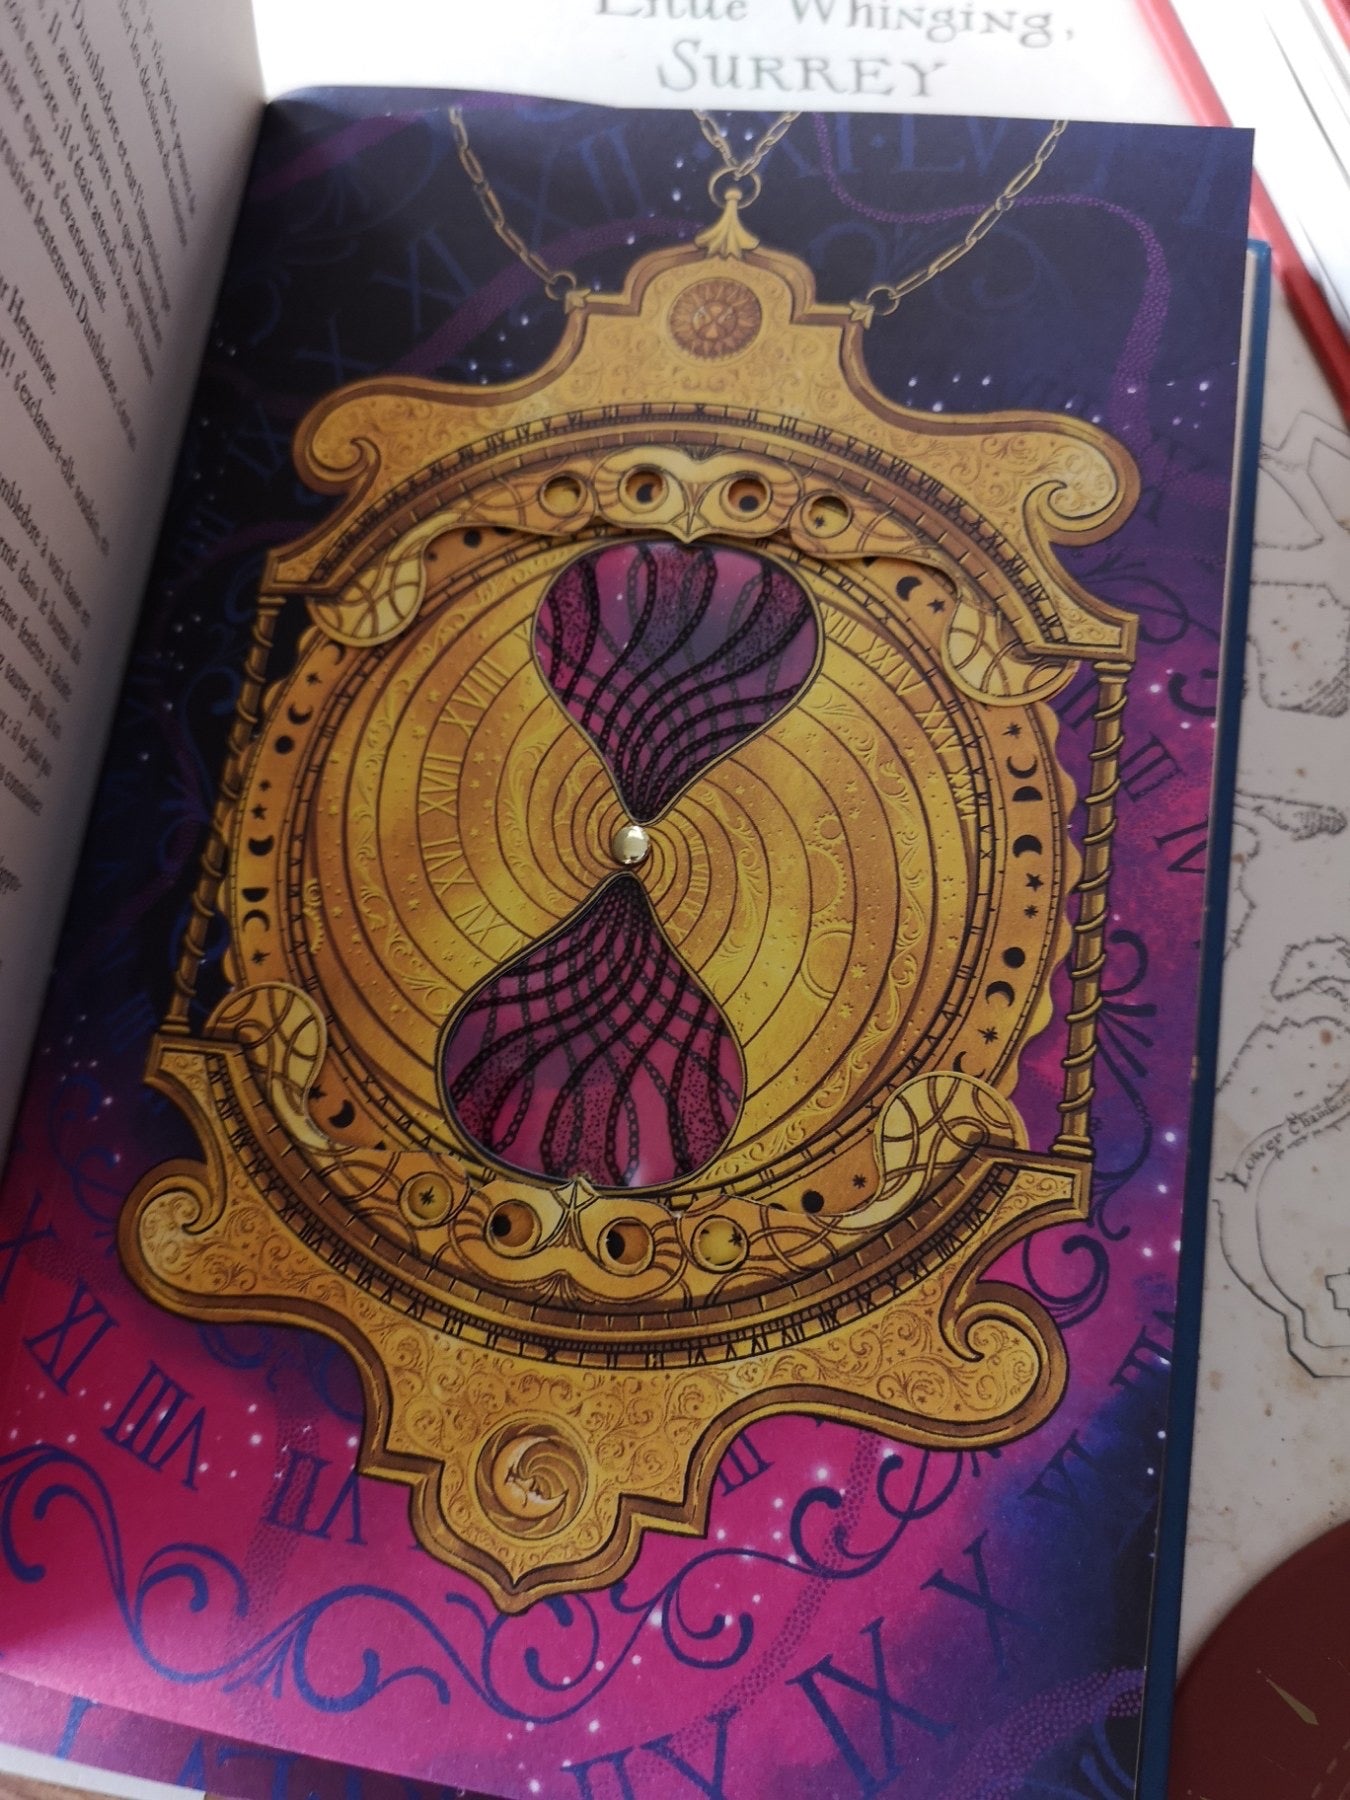 Harry Potter et le prisonnier d'Azkaban - illustré par MinaLima  -